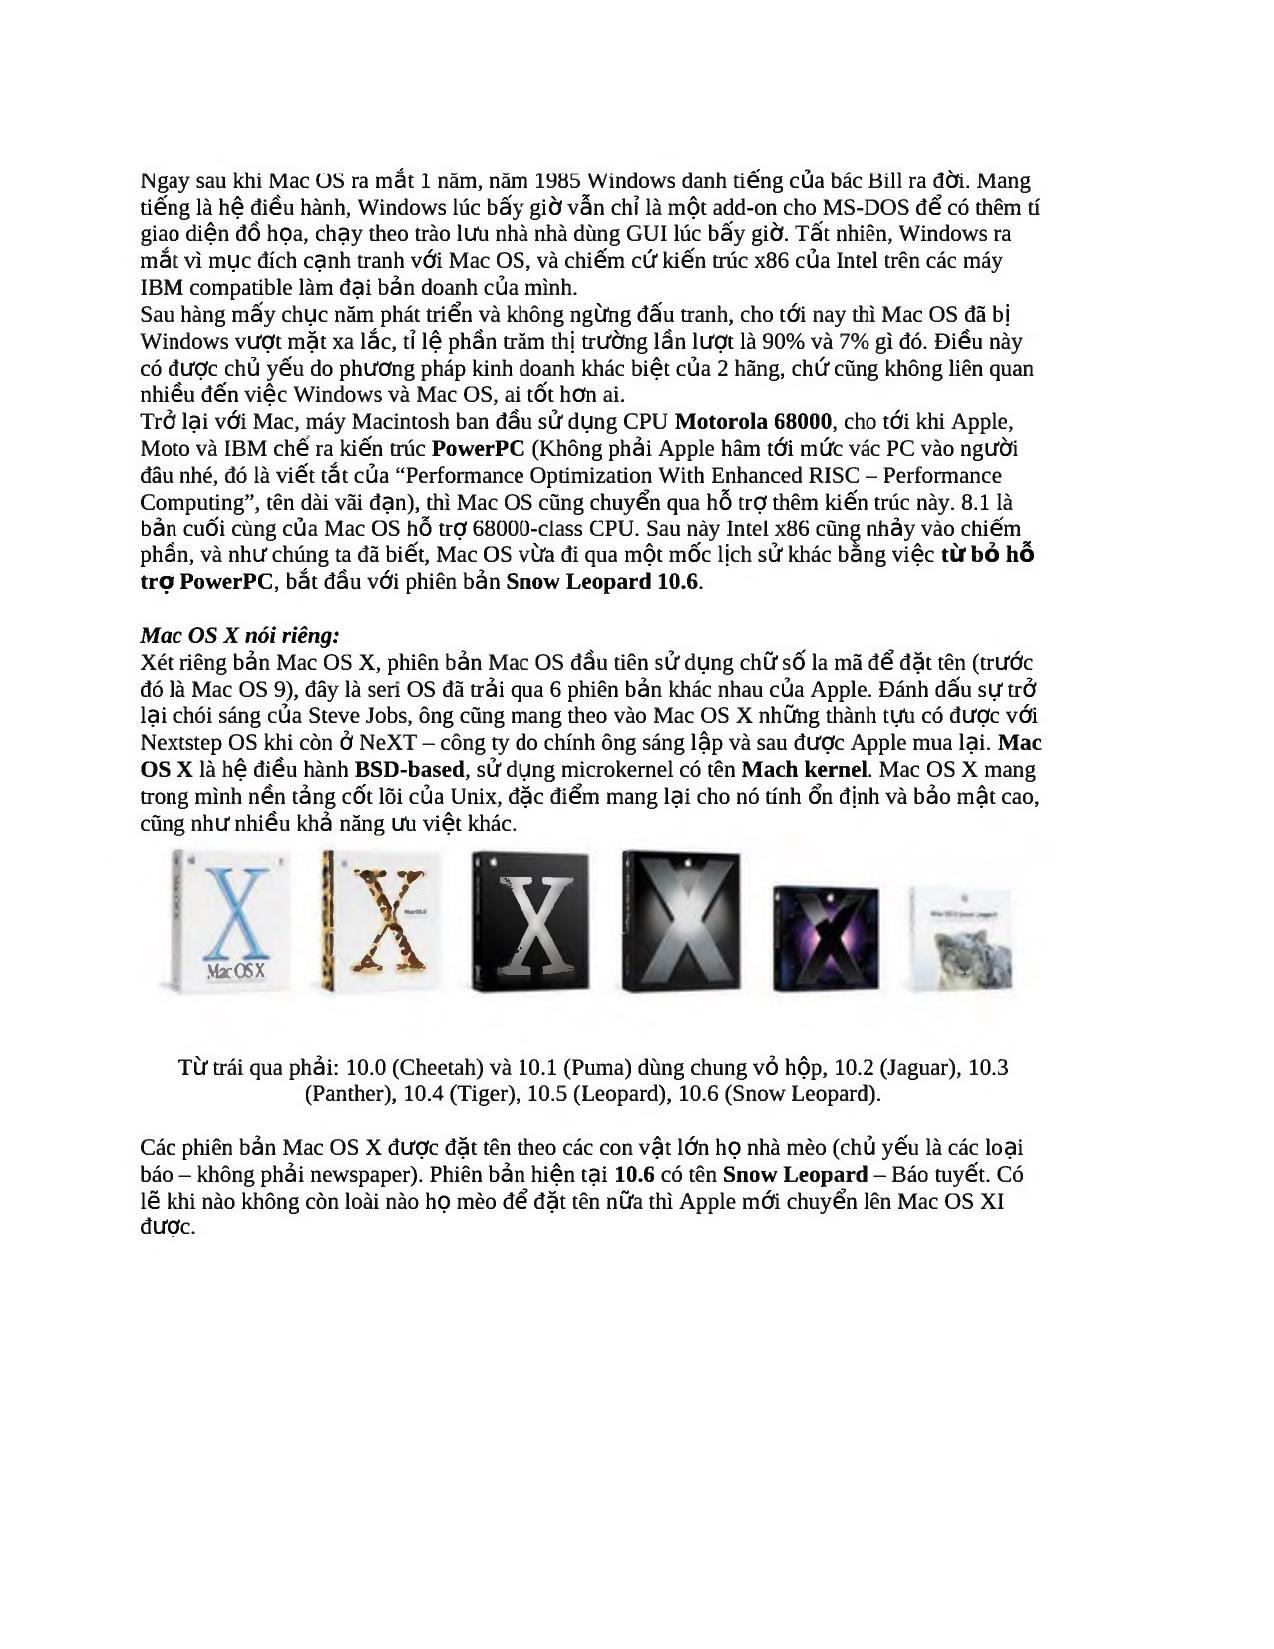 Hướng dẫn cài đặt Mac OS trên PC toàn tập - Phần 1: Lịch sử và nguyên nhân trang 2